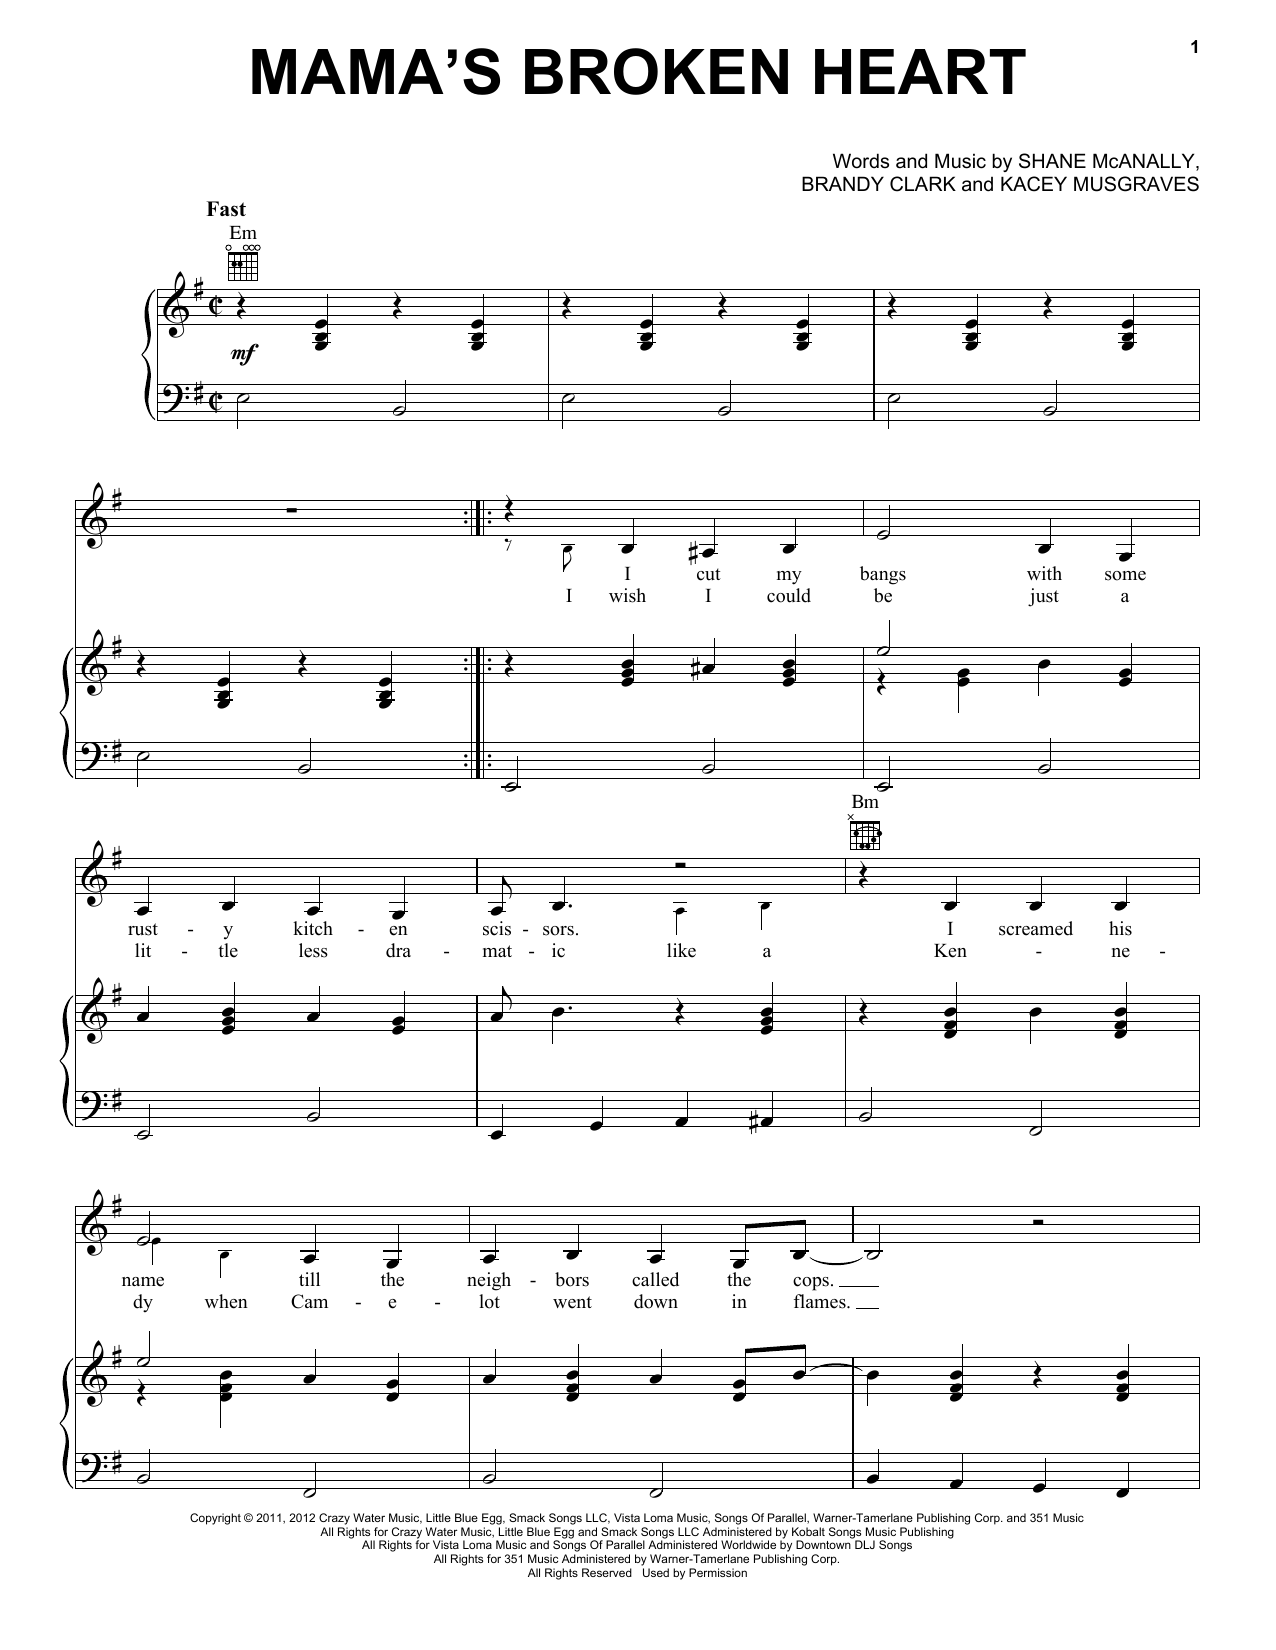 Miranda Lambert Mama's Broken Heart Sheet Music Notes & Chords for Piano, Vocal & Guitar (Right-Hand Melody) - Download or Print PDF